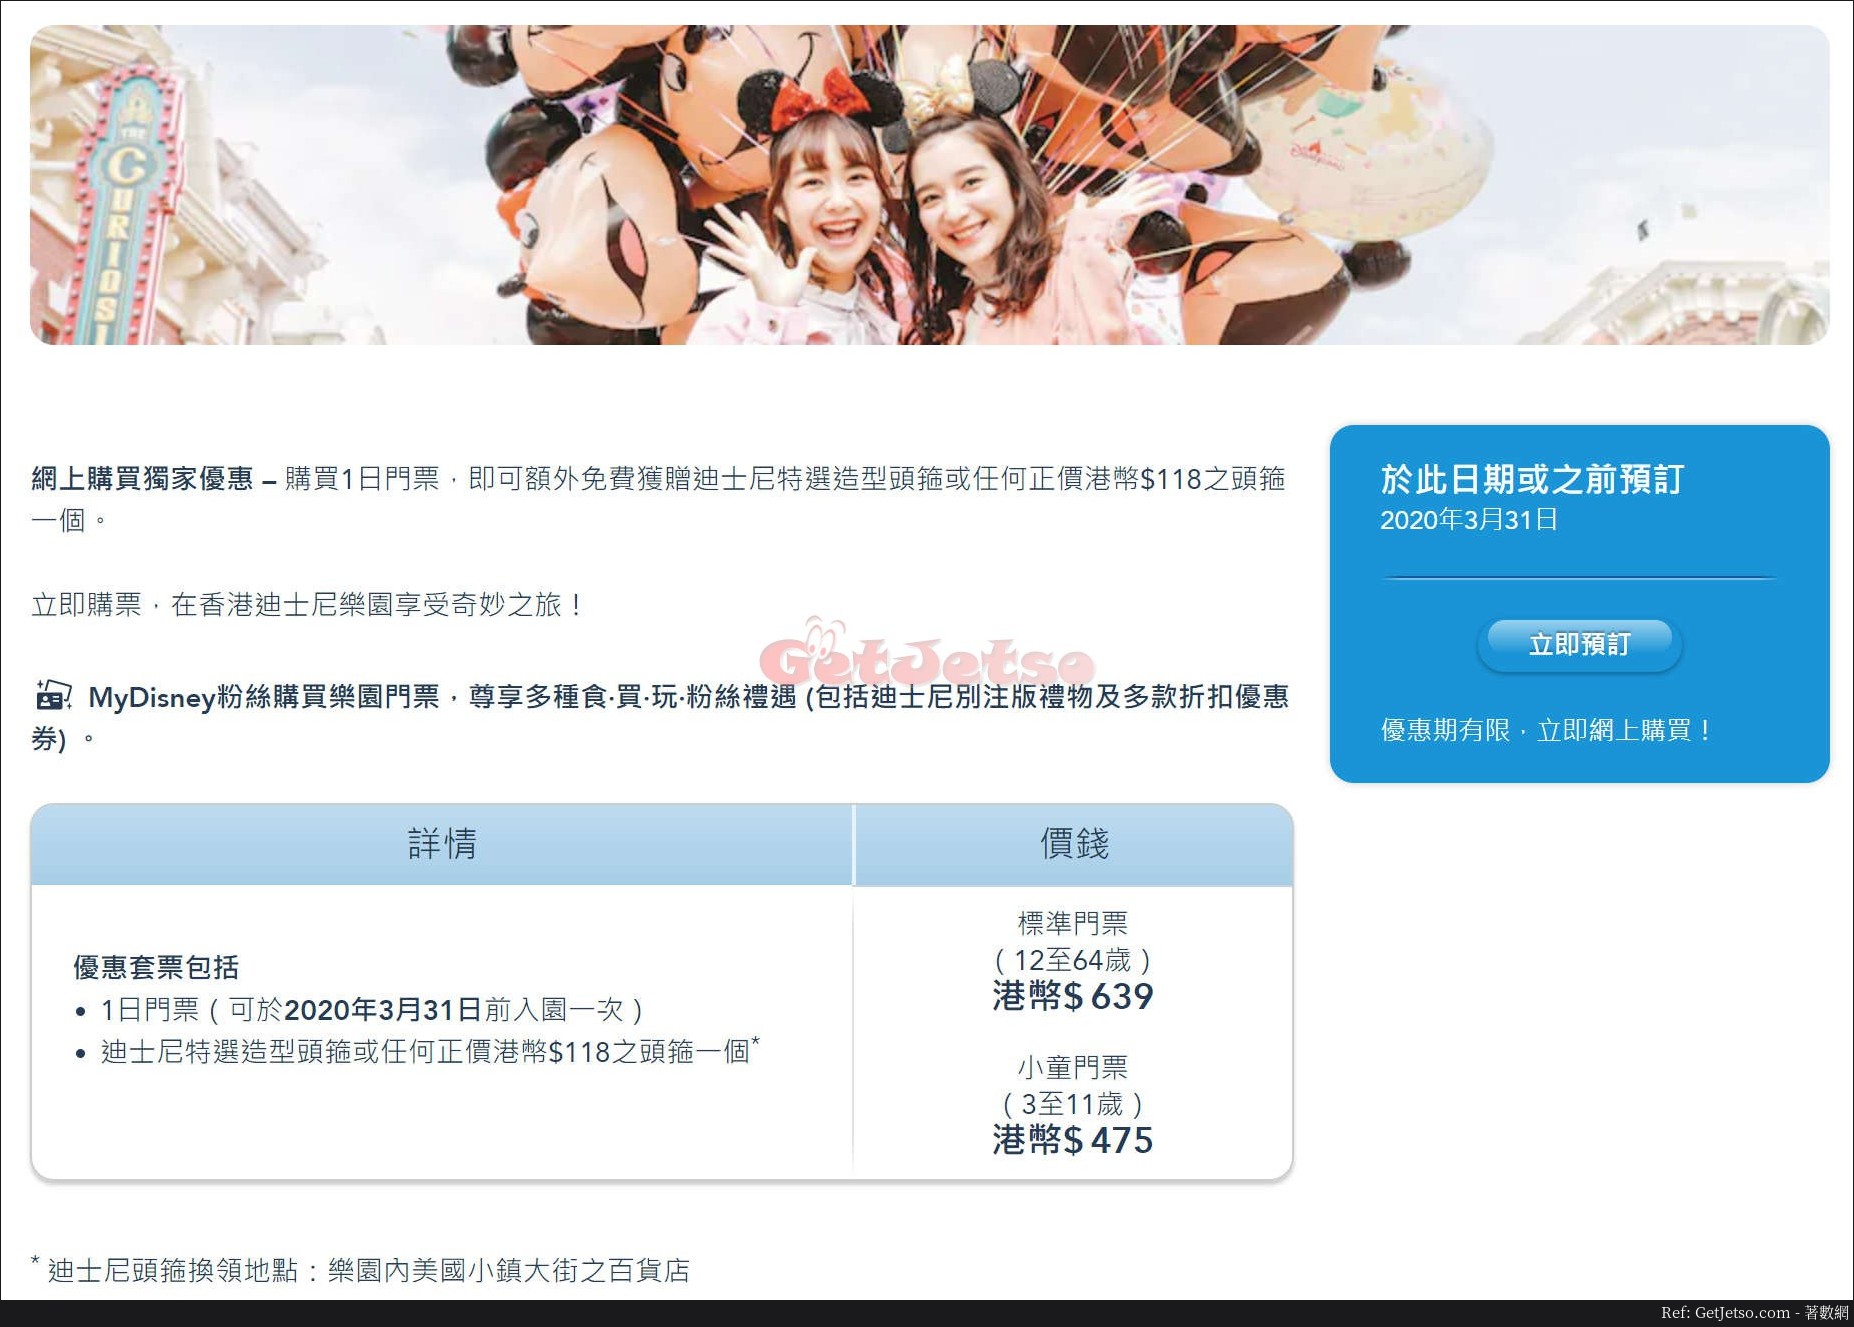 香港迪士尼樂園1日門票連迪士尼頭箍優惠@香港居民(至20年3月31日)圖片1